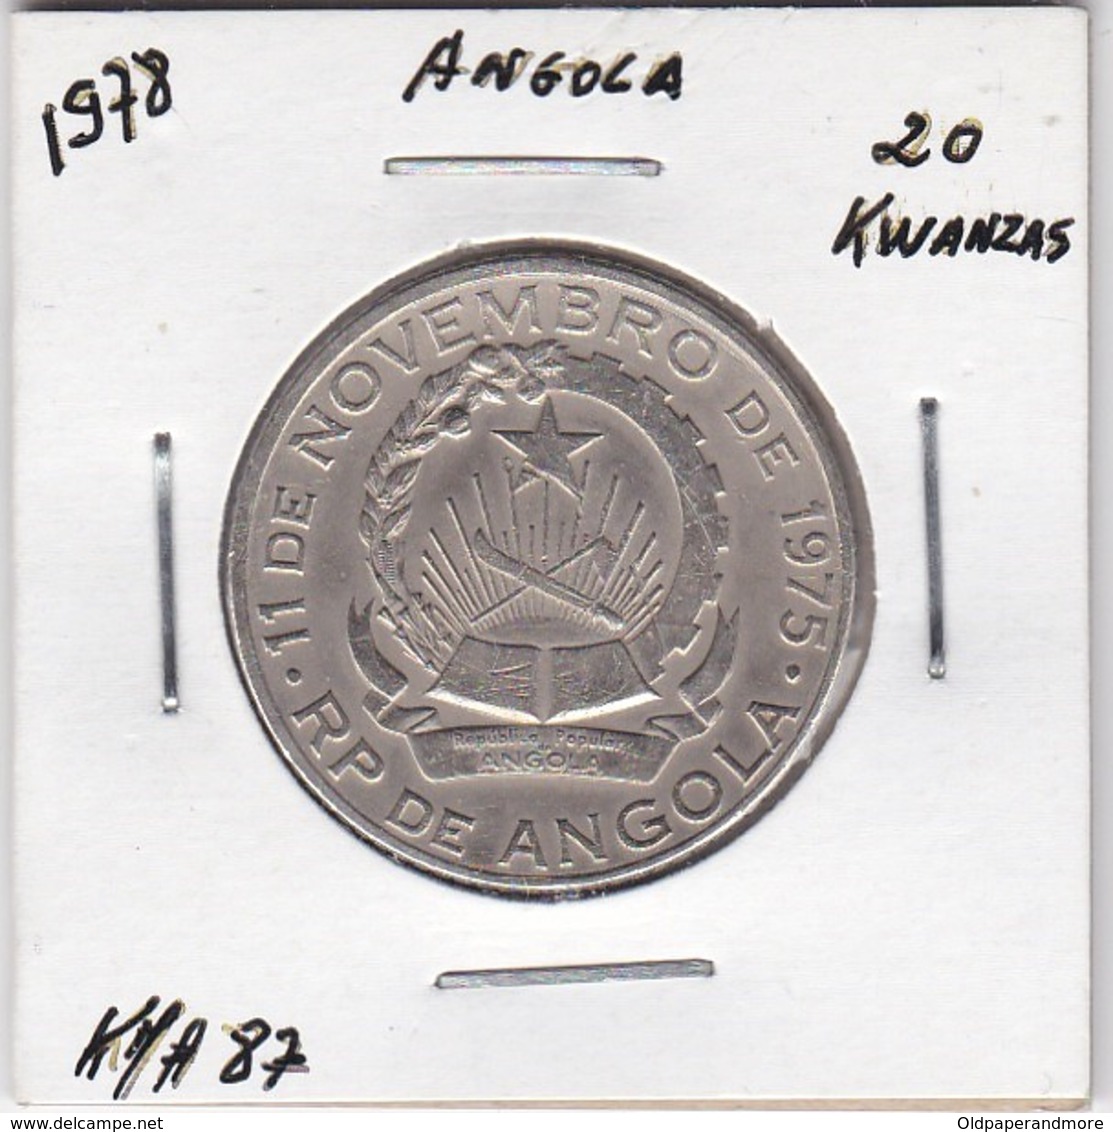 ANGOLA COIN - 20 KWANZAS 1978 - Angola